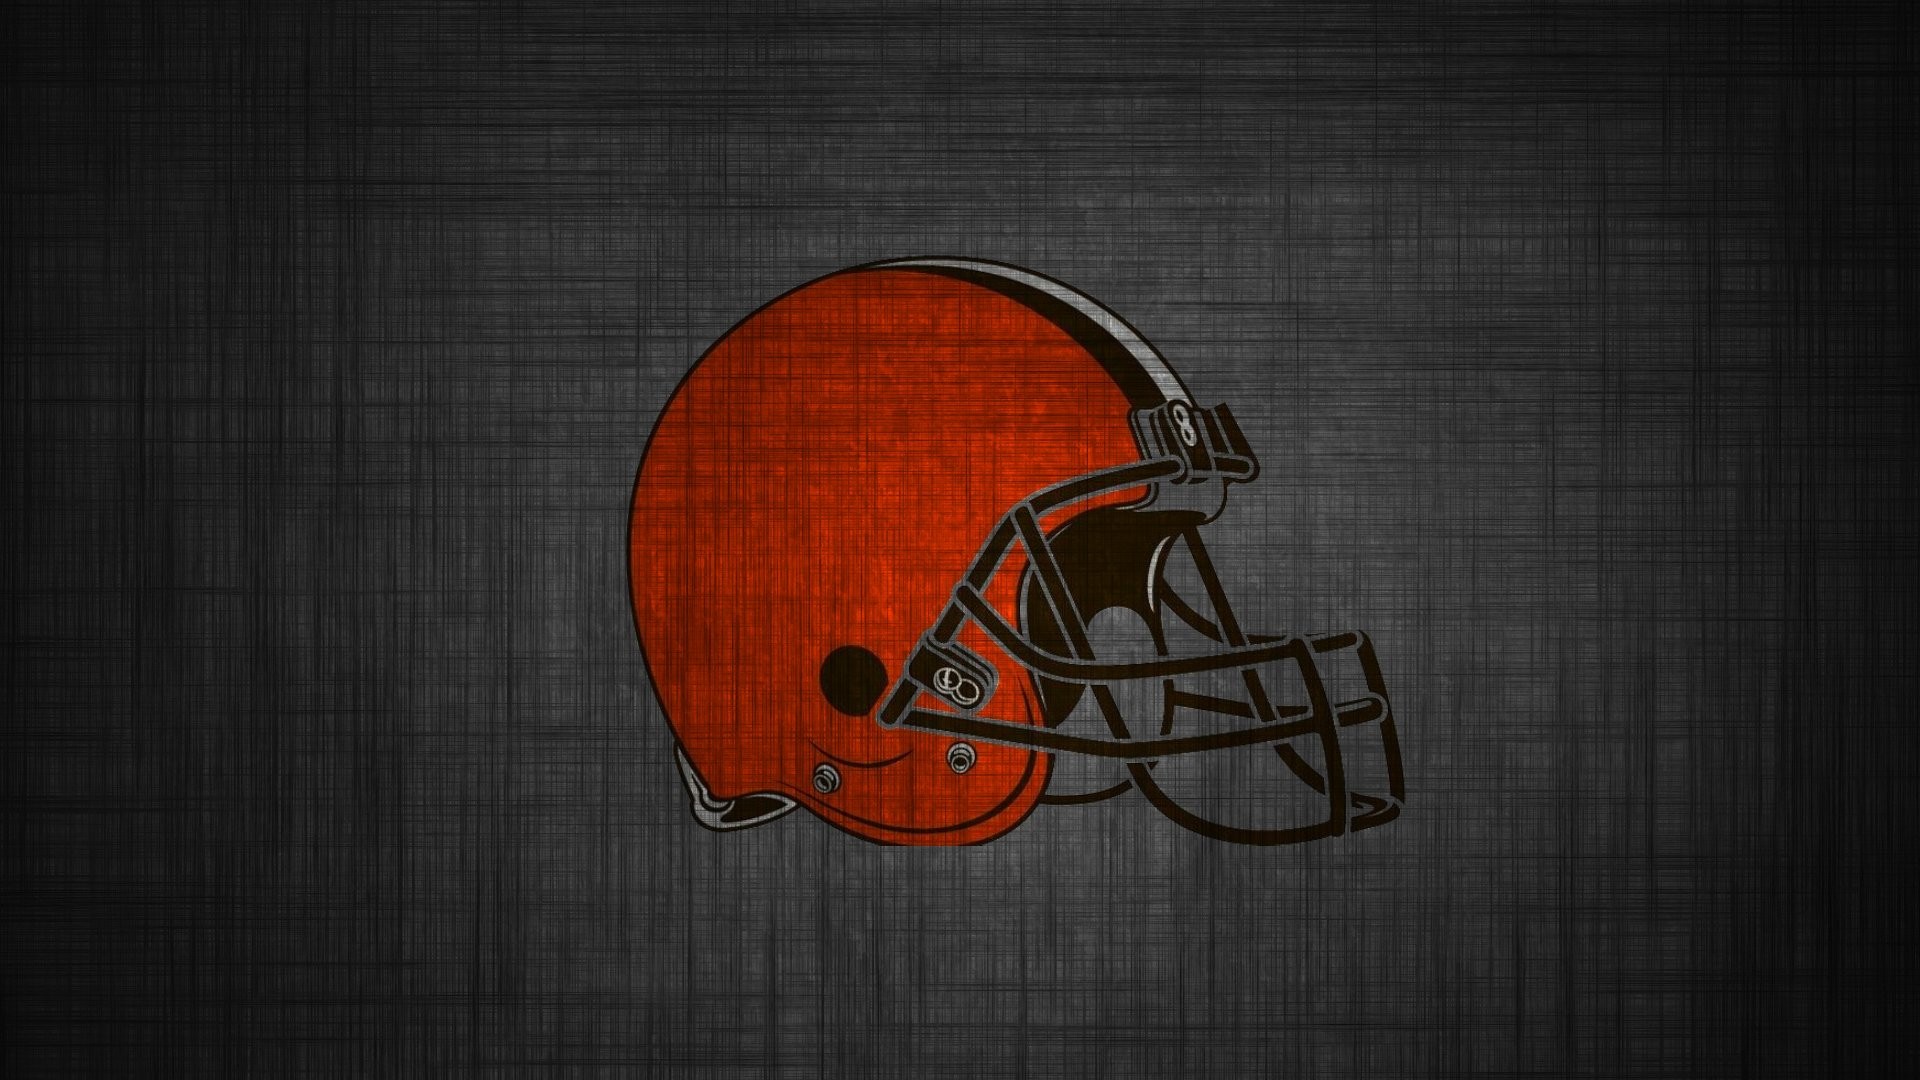 Wallpaper Cleveland Browns Nfl Football